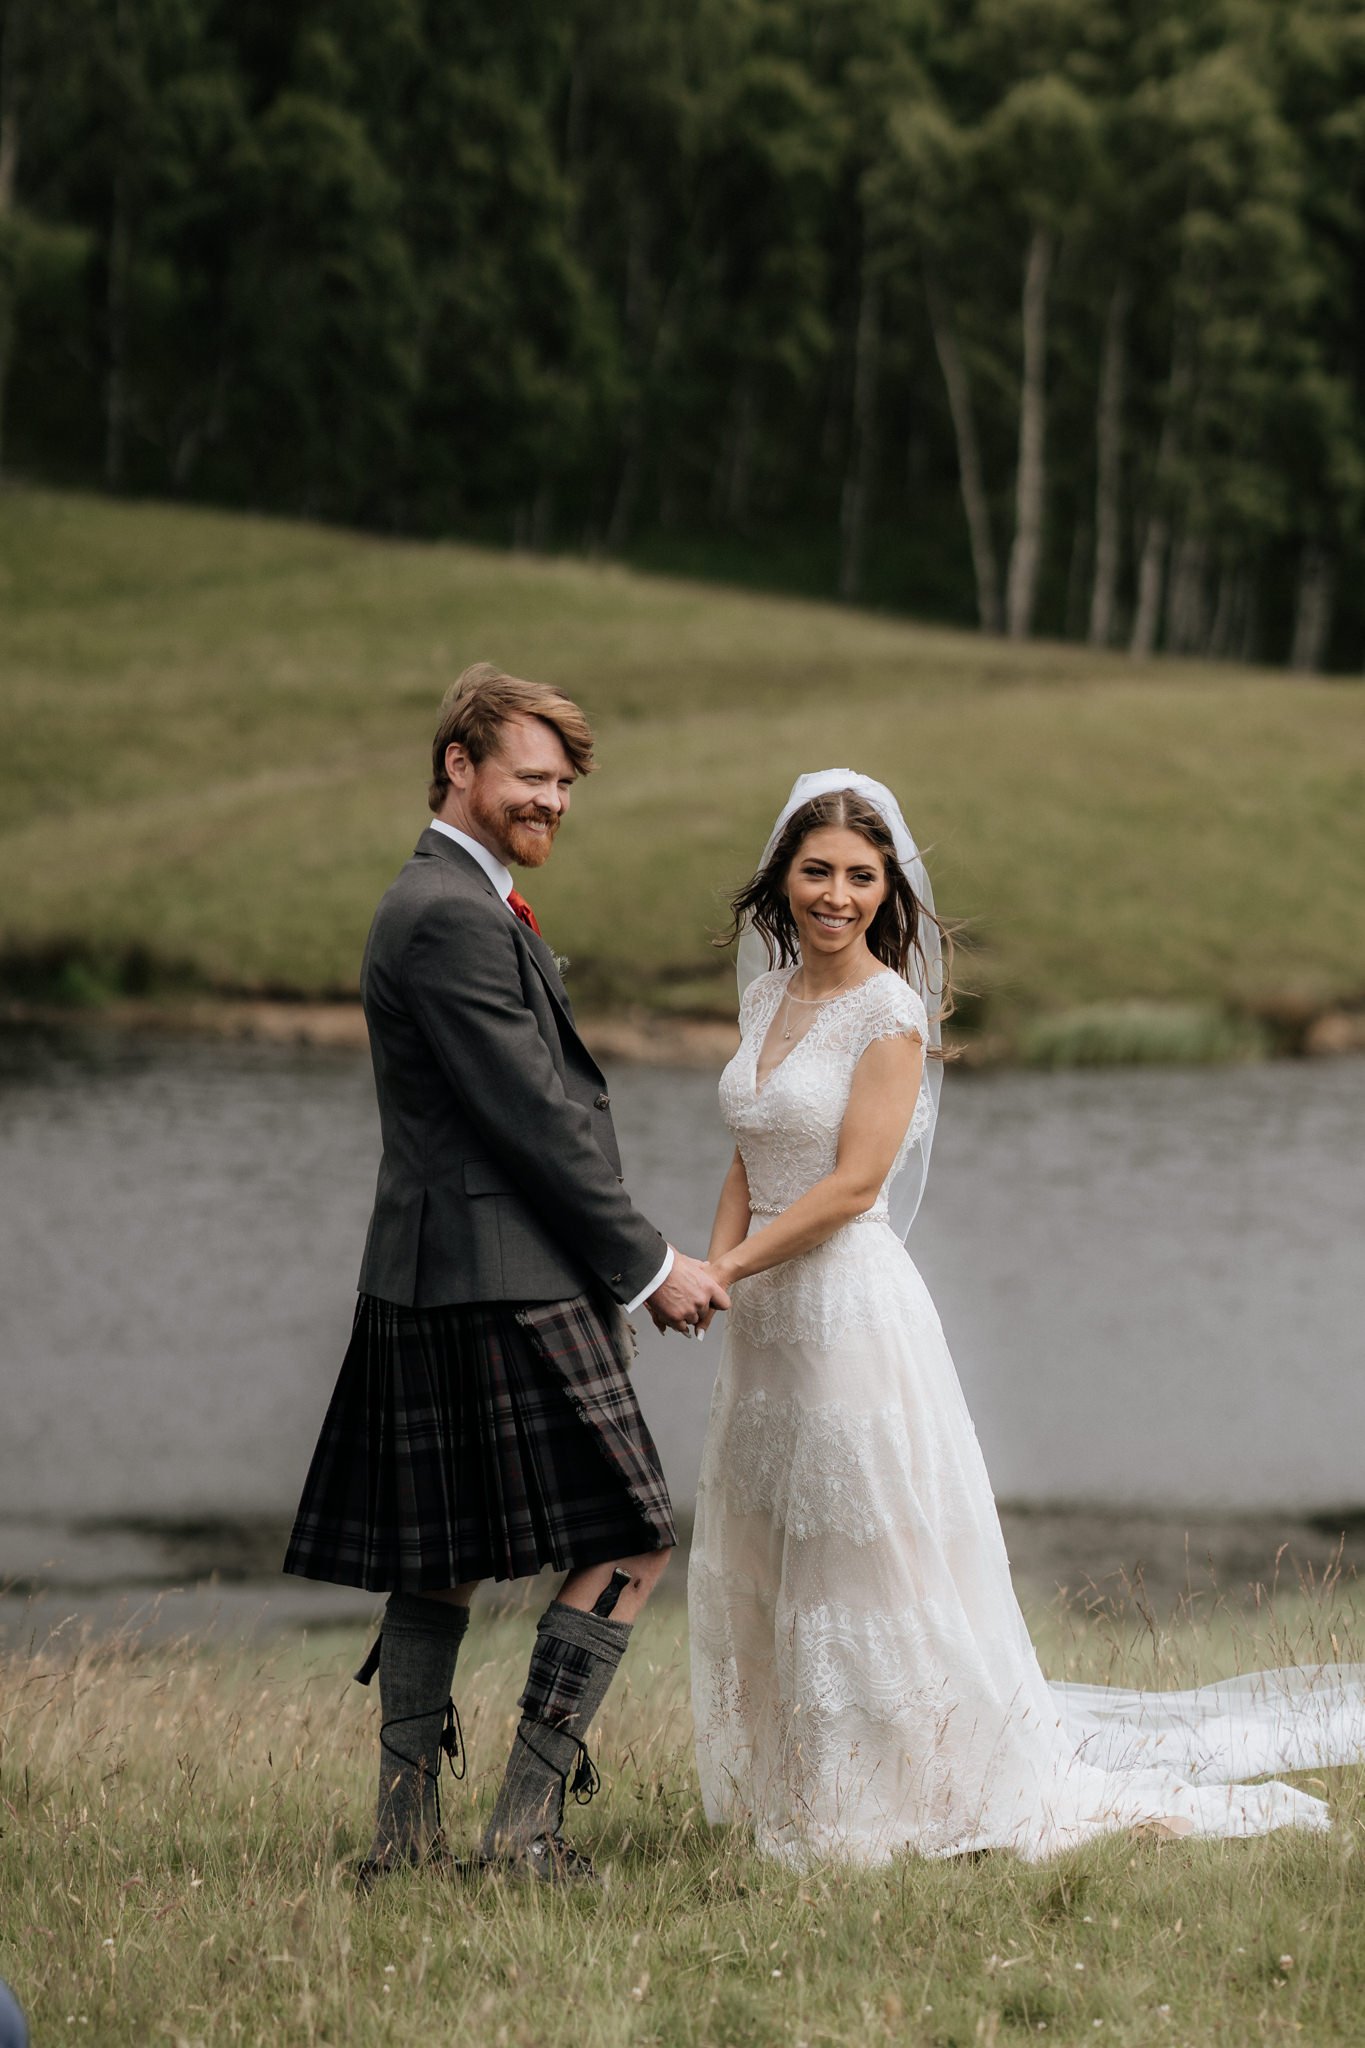 Glen Clova Hotel wedding photography | Aberdeenshire wedding photographer and videographer-27.jpg